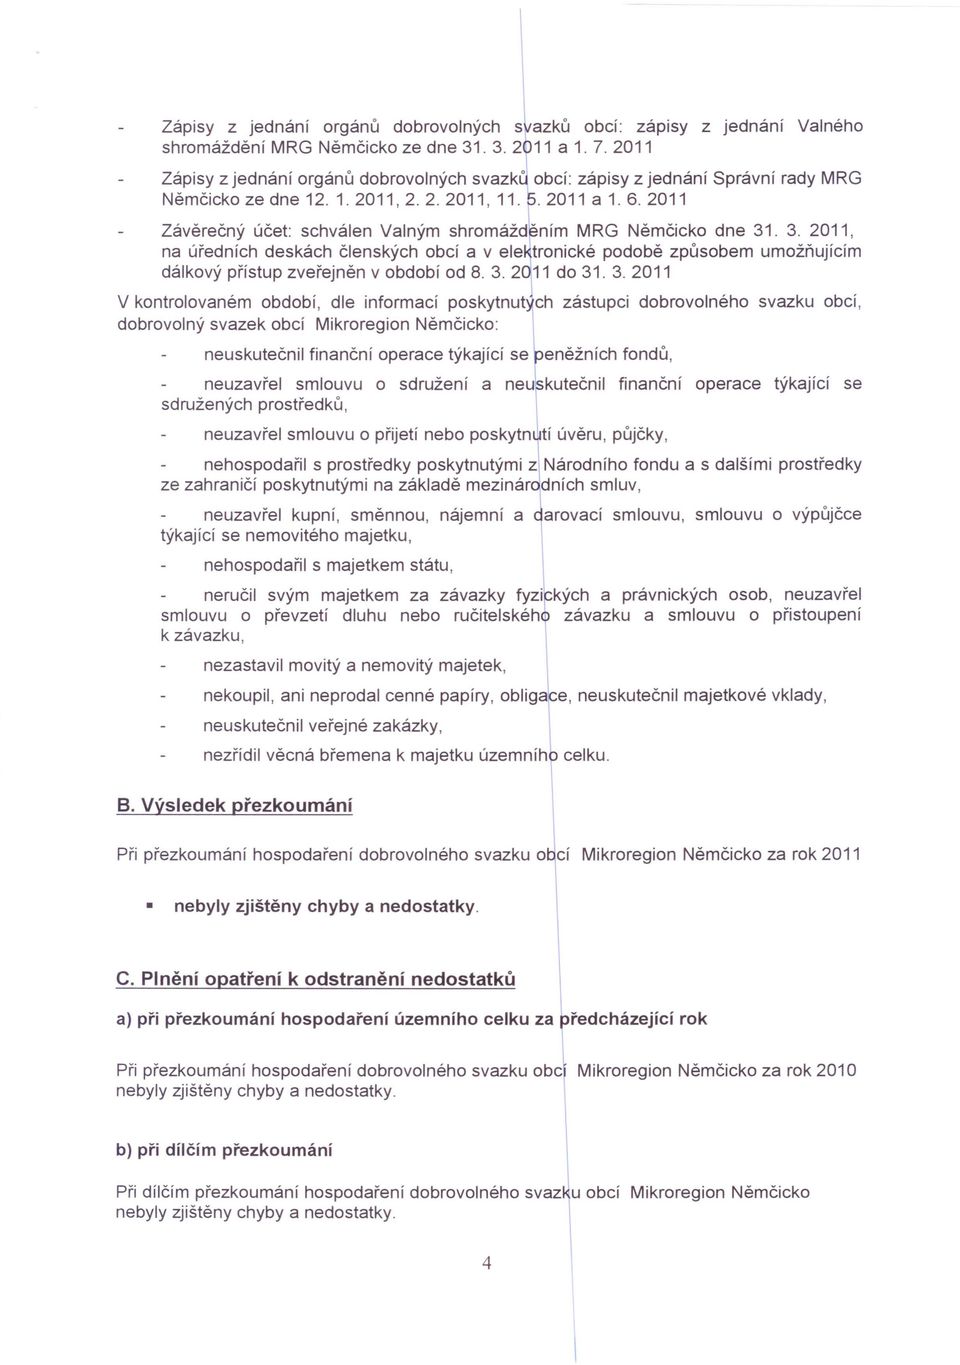 2011 Závěrečný účet: schválen Valným shromážd ~ním MRG Němčicko dne 31. 3. 2011, na úředních deskách členských obcí a v elektronické podobě způsobem umožňujícím dálkový přístup zveřejněn v období od 8.